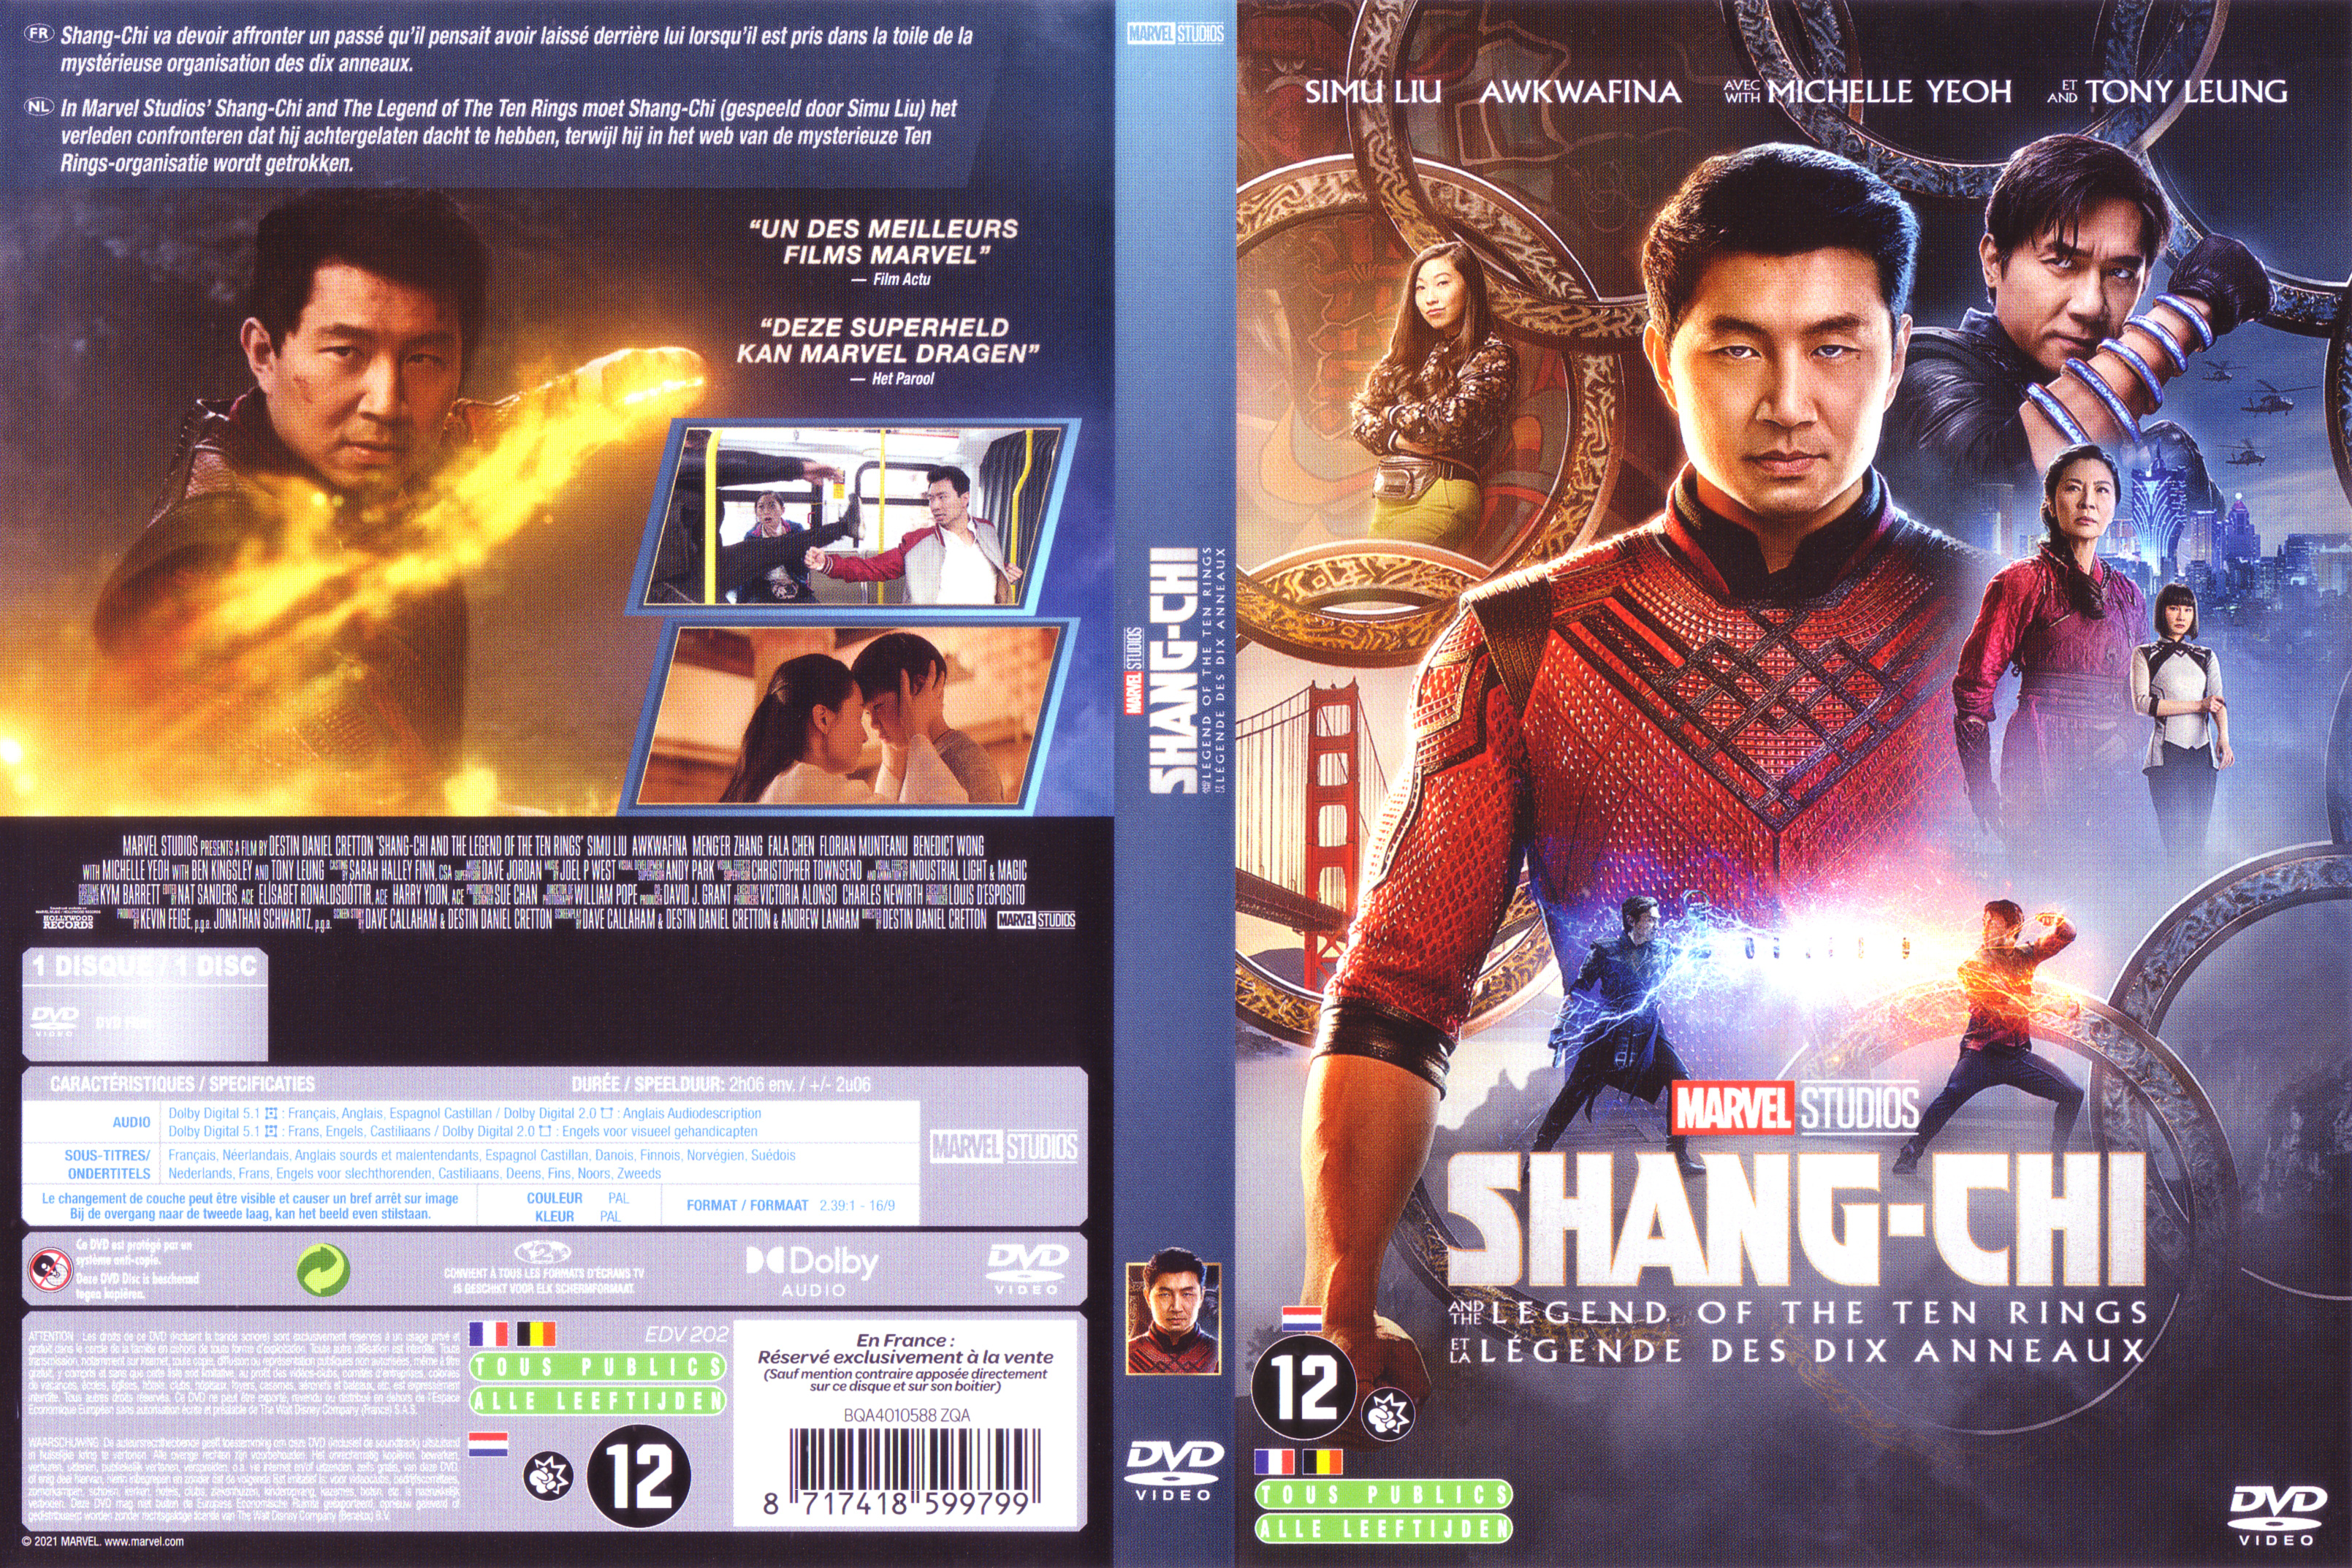 Jaquette DVD Shang-Chi et la lgende des dix anneaux